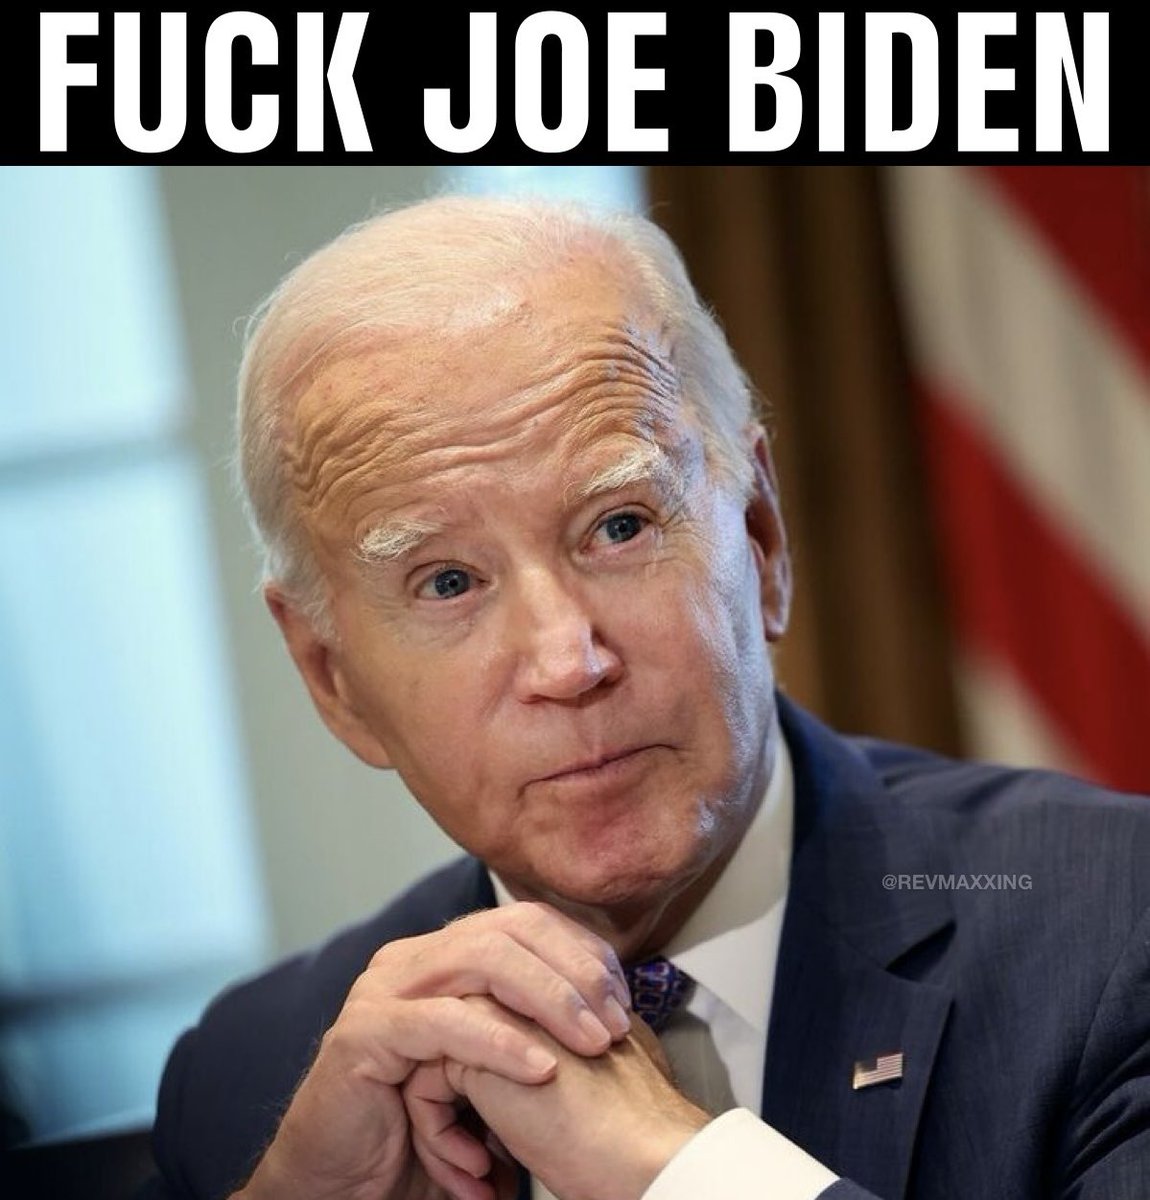 F*ck Joe Biden Do you agree?